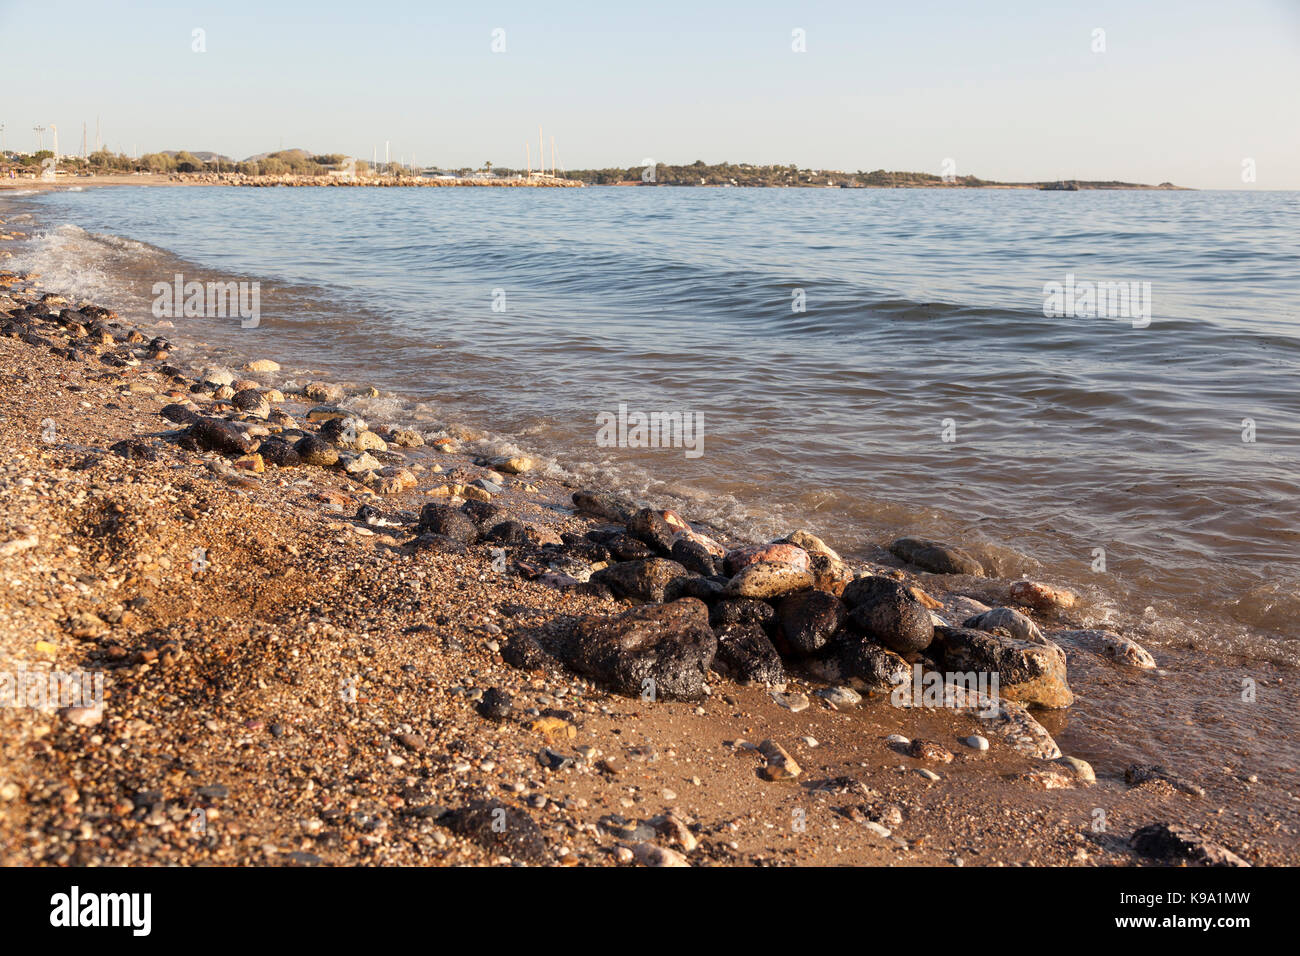 La plage de Glyfada (golfe de saros, Athènes, Grèce) pendant les jours de la marée noire. La baignade est interdite dans la région. Banque D'Images